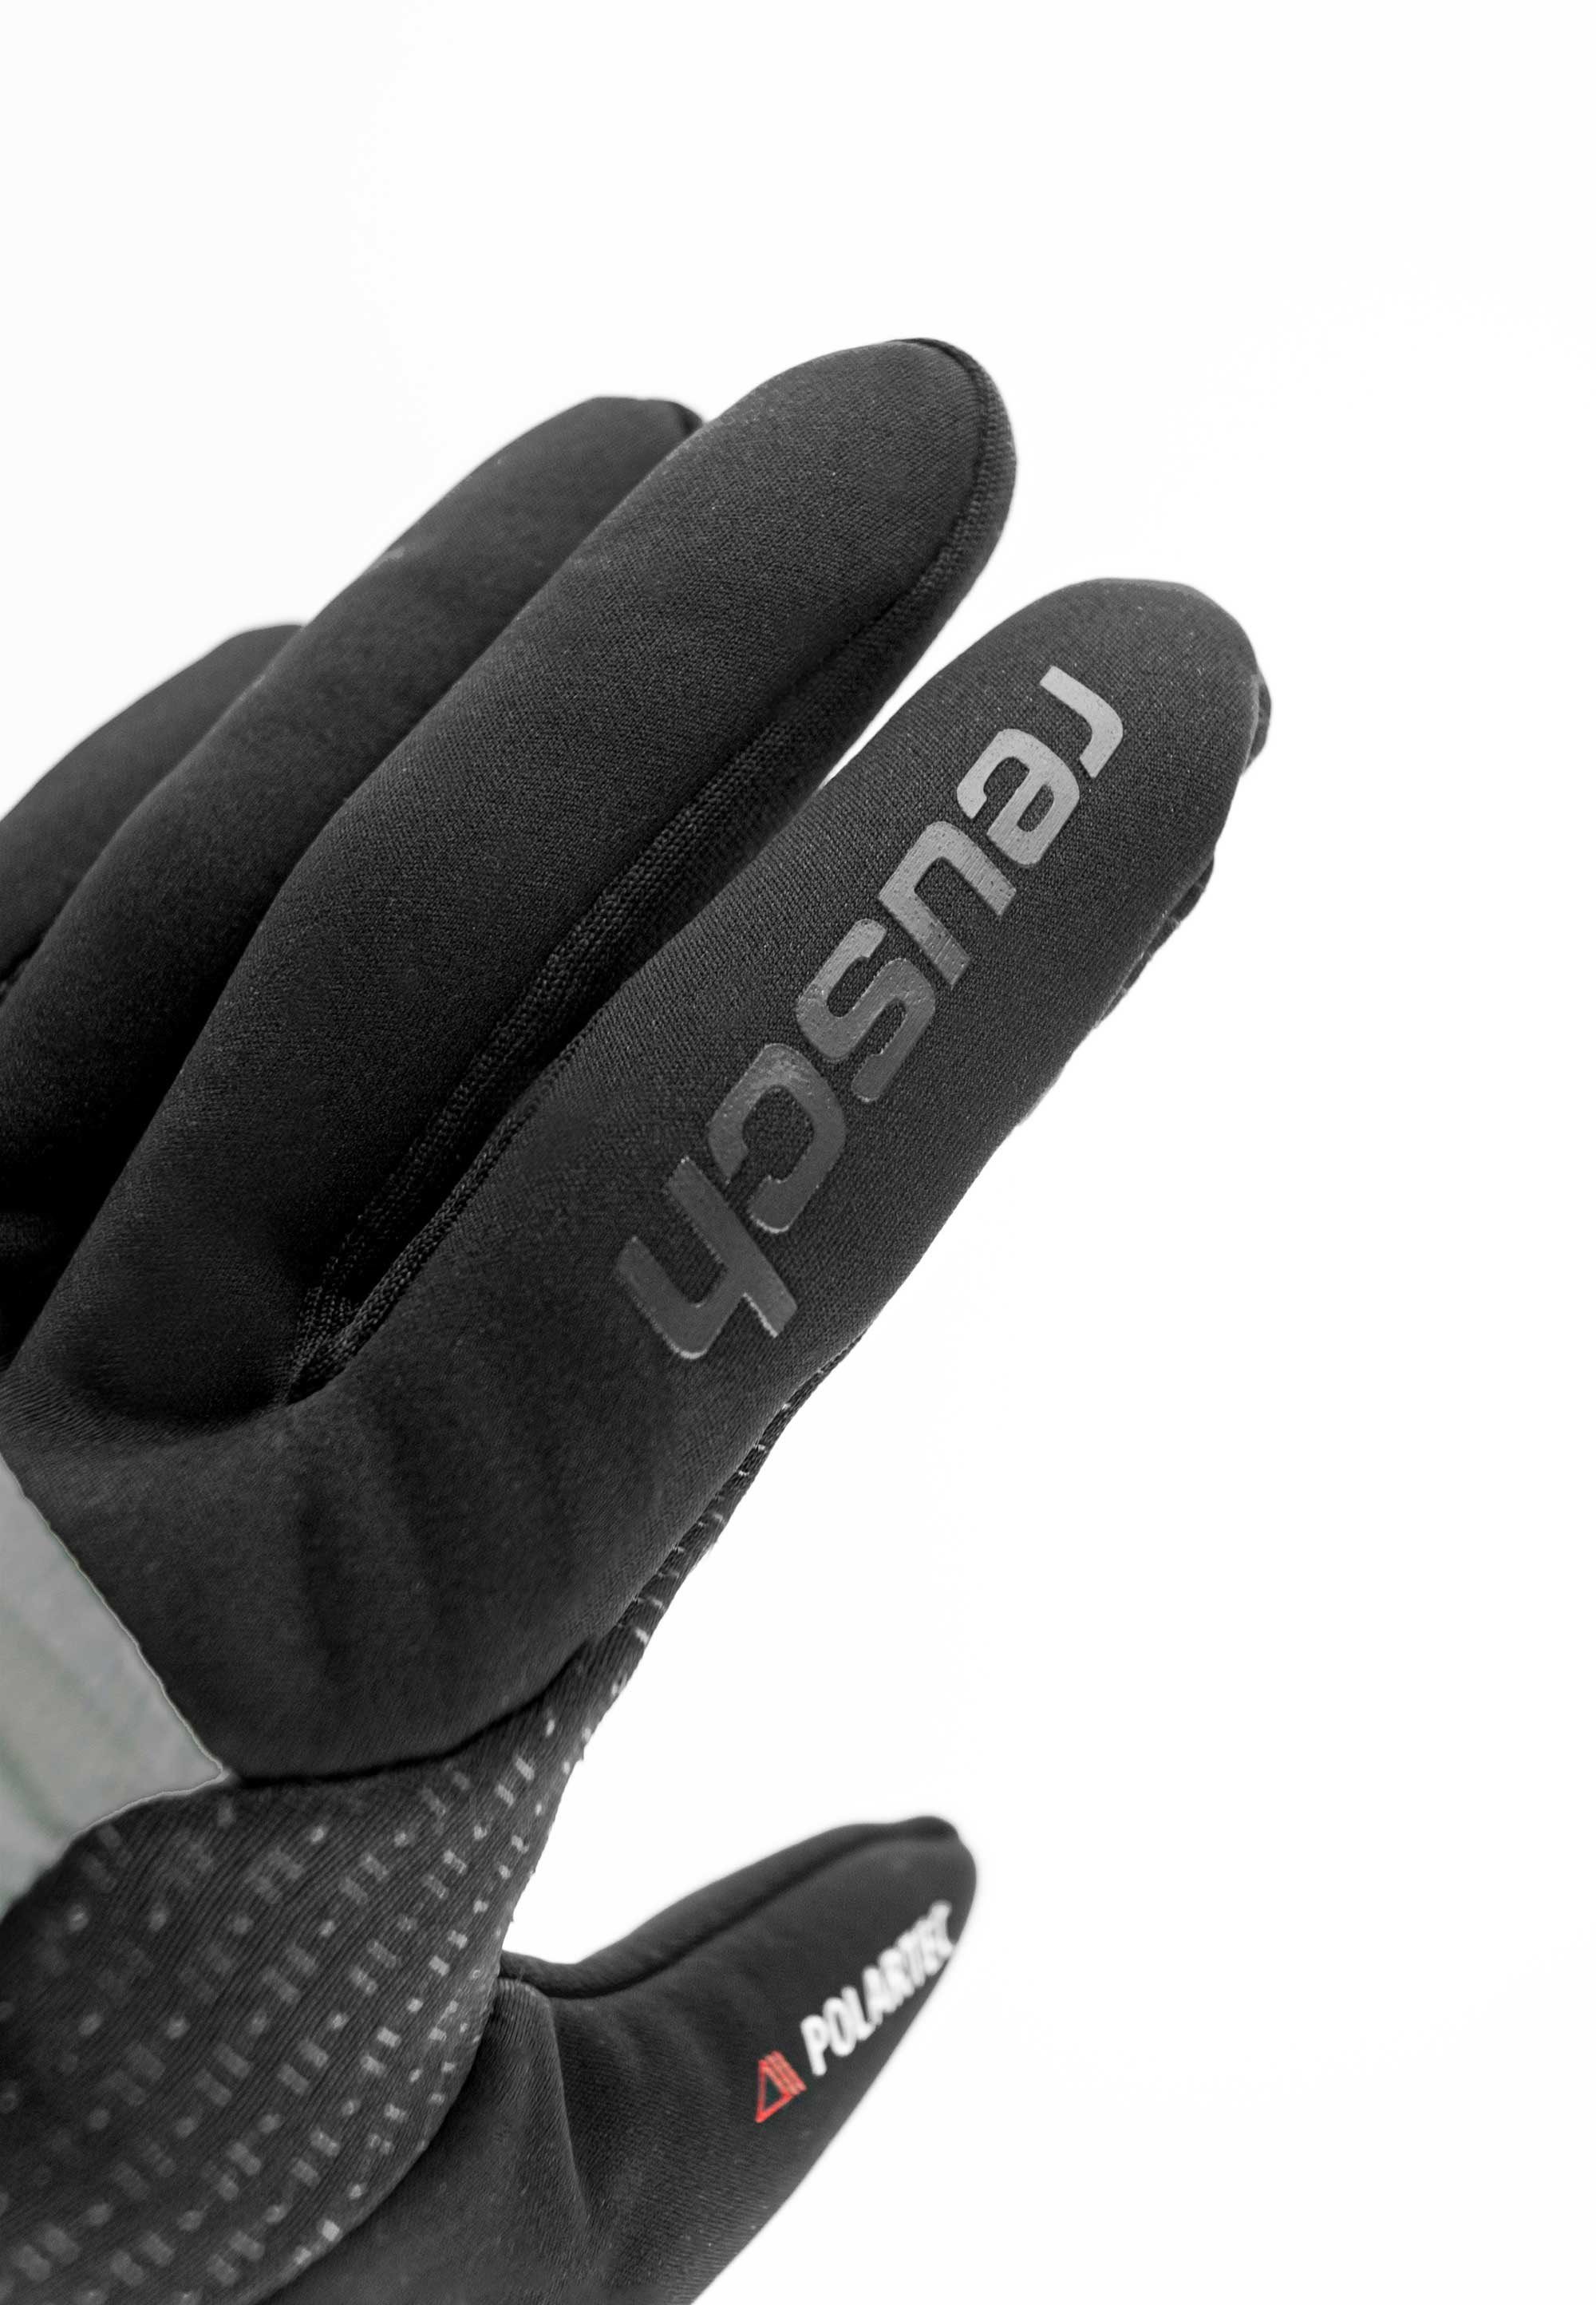 Reusch Skihandschuhe Garhwal Hybrid praktischer grau-schwarz mit Touchscreen-Funktion